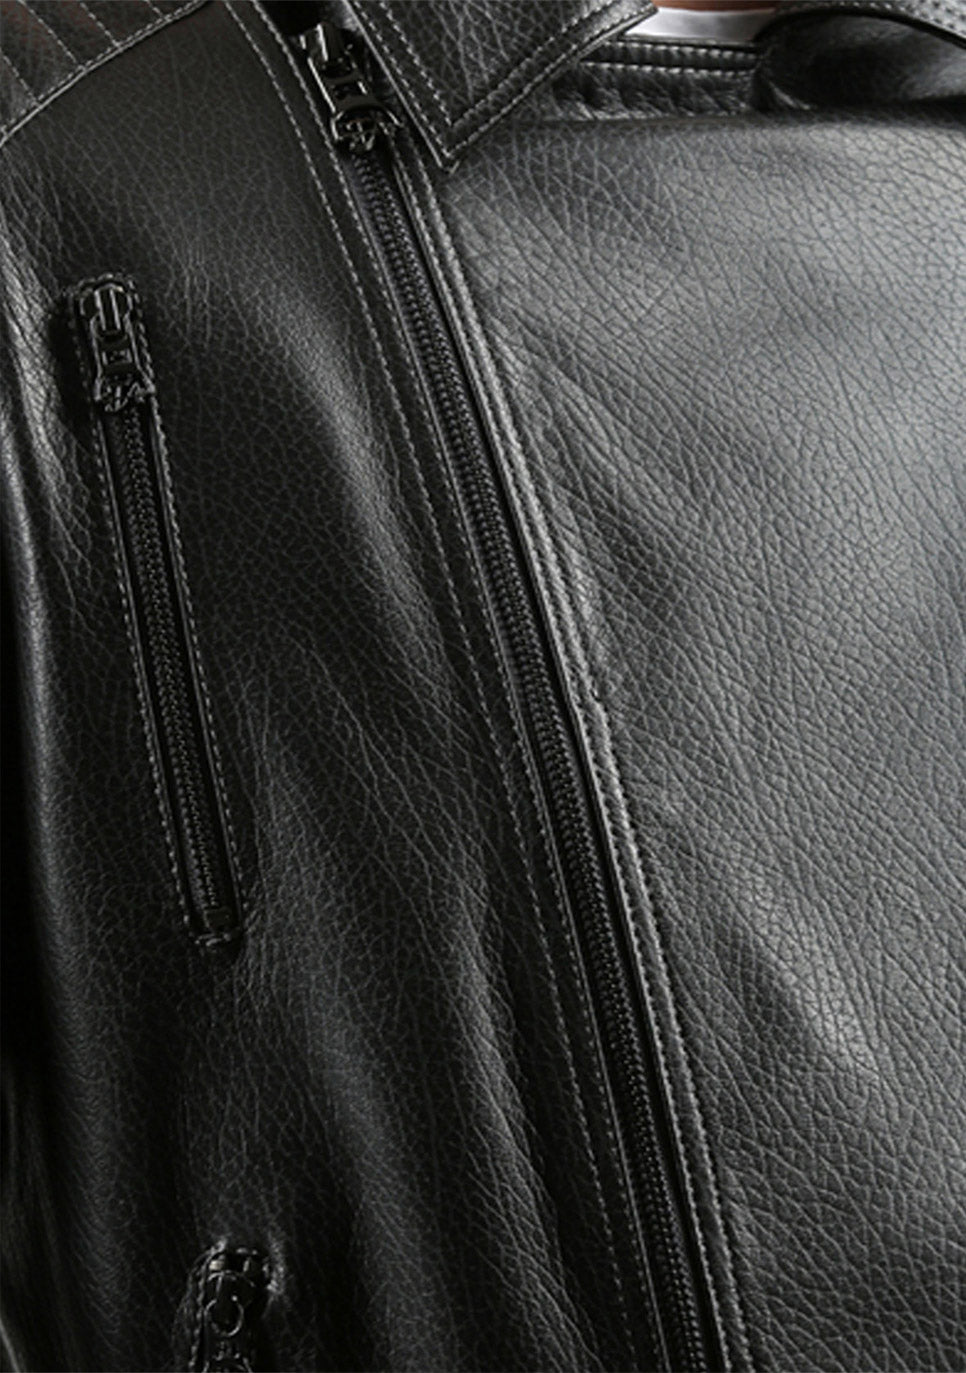 The Fossett Black Leather Men Jacket